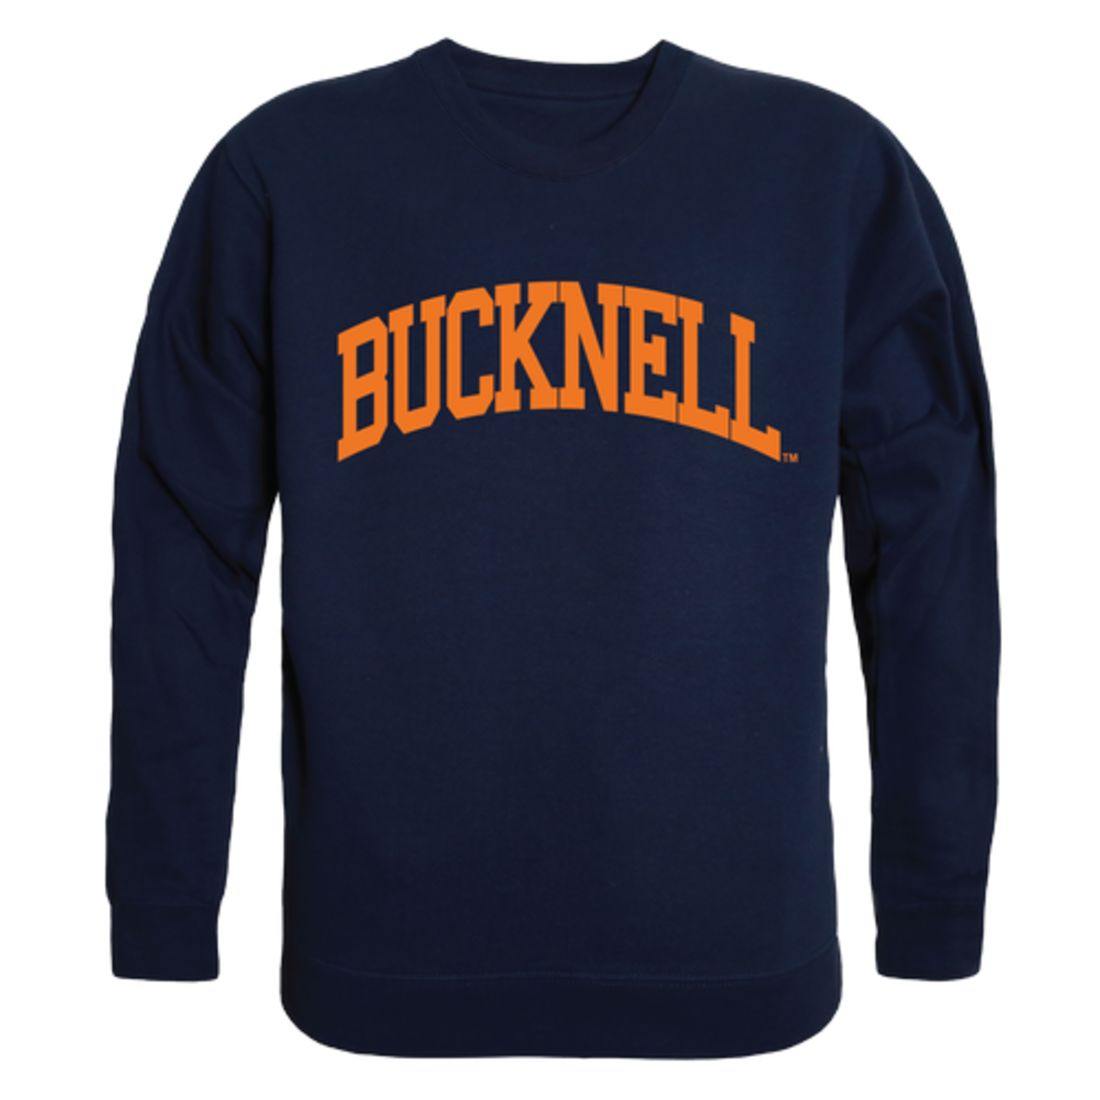 Bucknell University Bison Arch Crewneck Pullover Sweatshirt Sweater Navy-Campus-Wardrobe